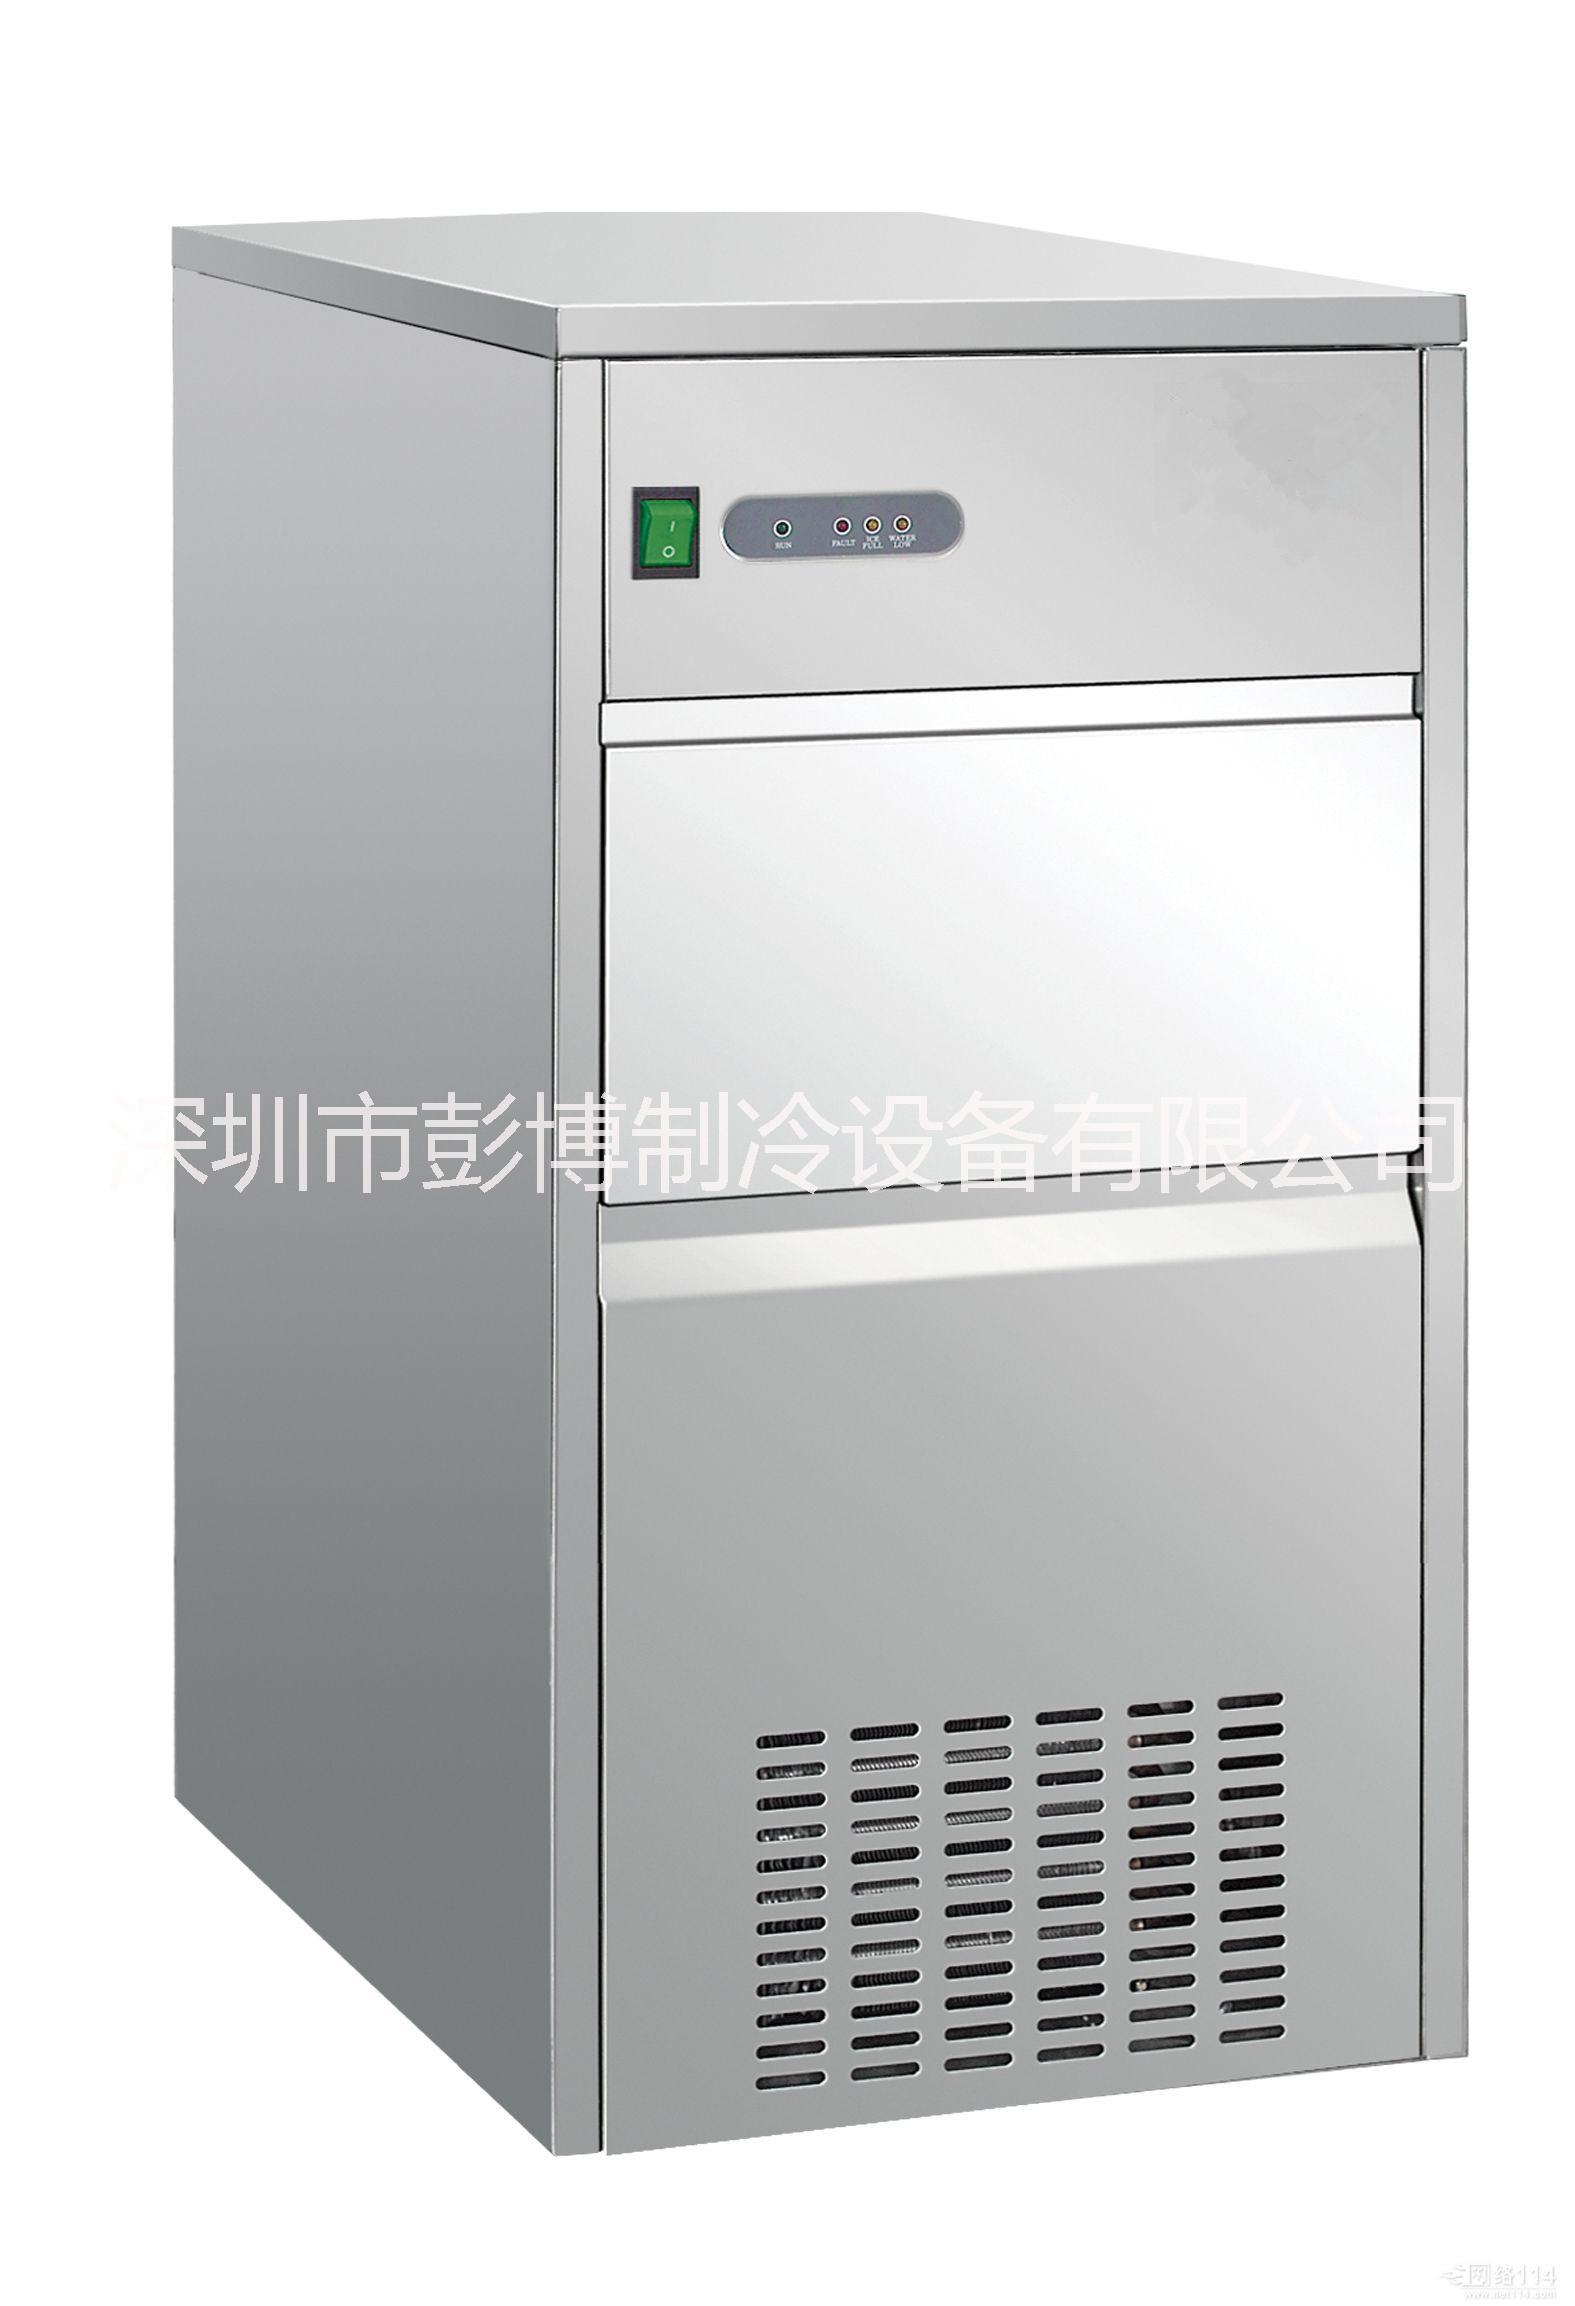 深圳开奶茶店用的工作台厨房柜价格厨房柜工作台冰柜价格图片